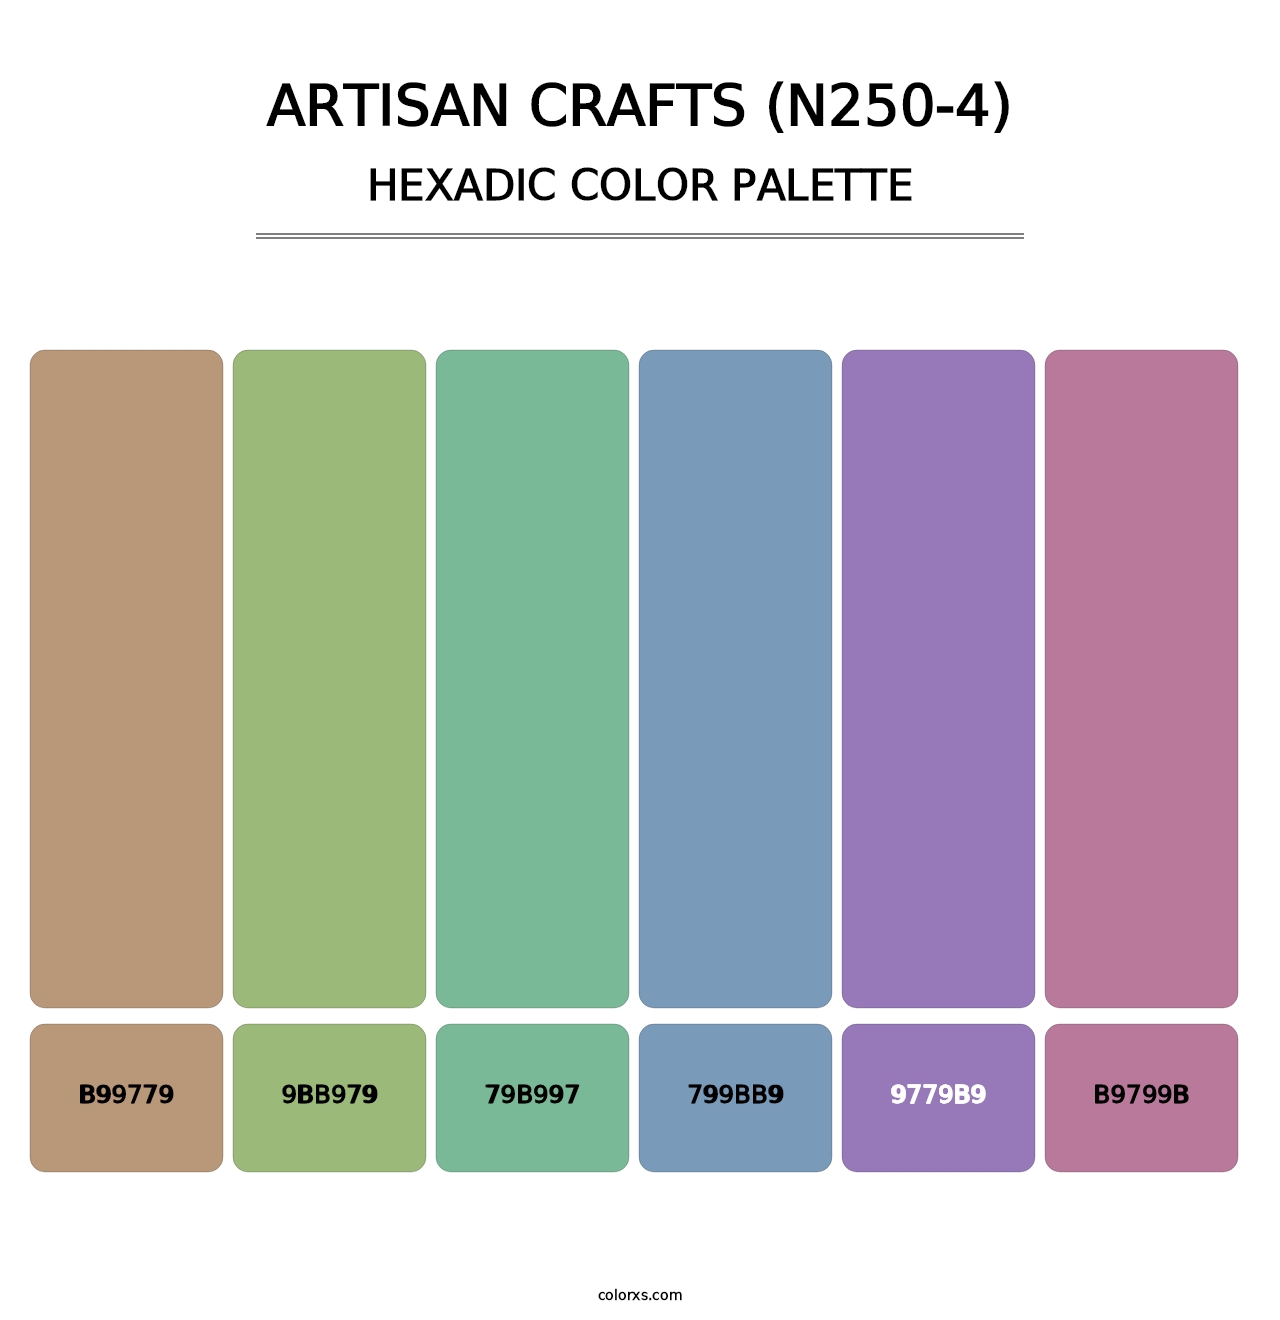 Artisan Crafts (N250-4) - Hexadic Color Palette